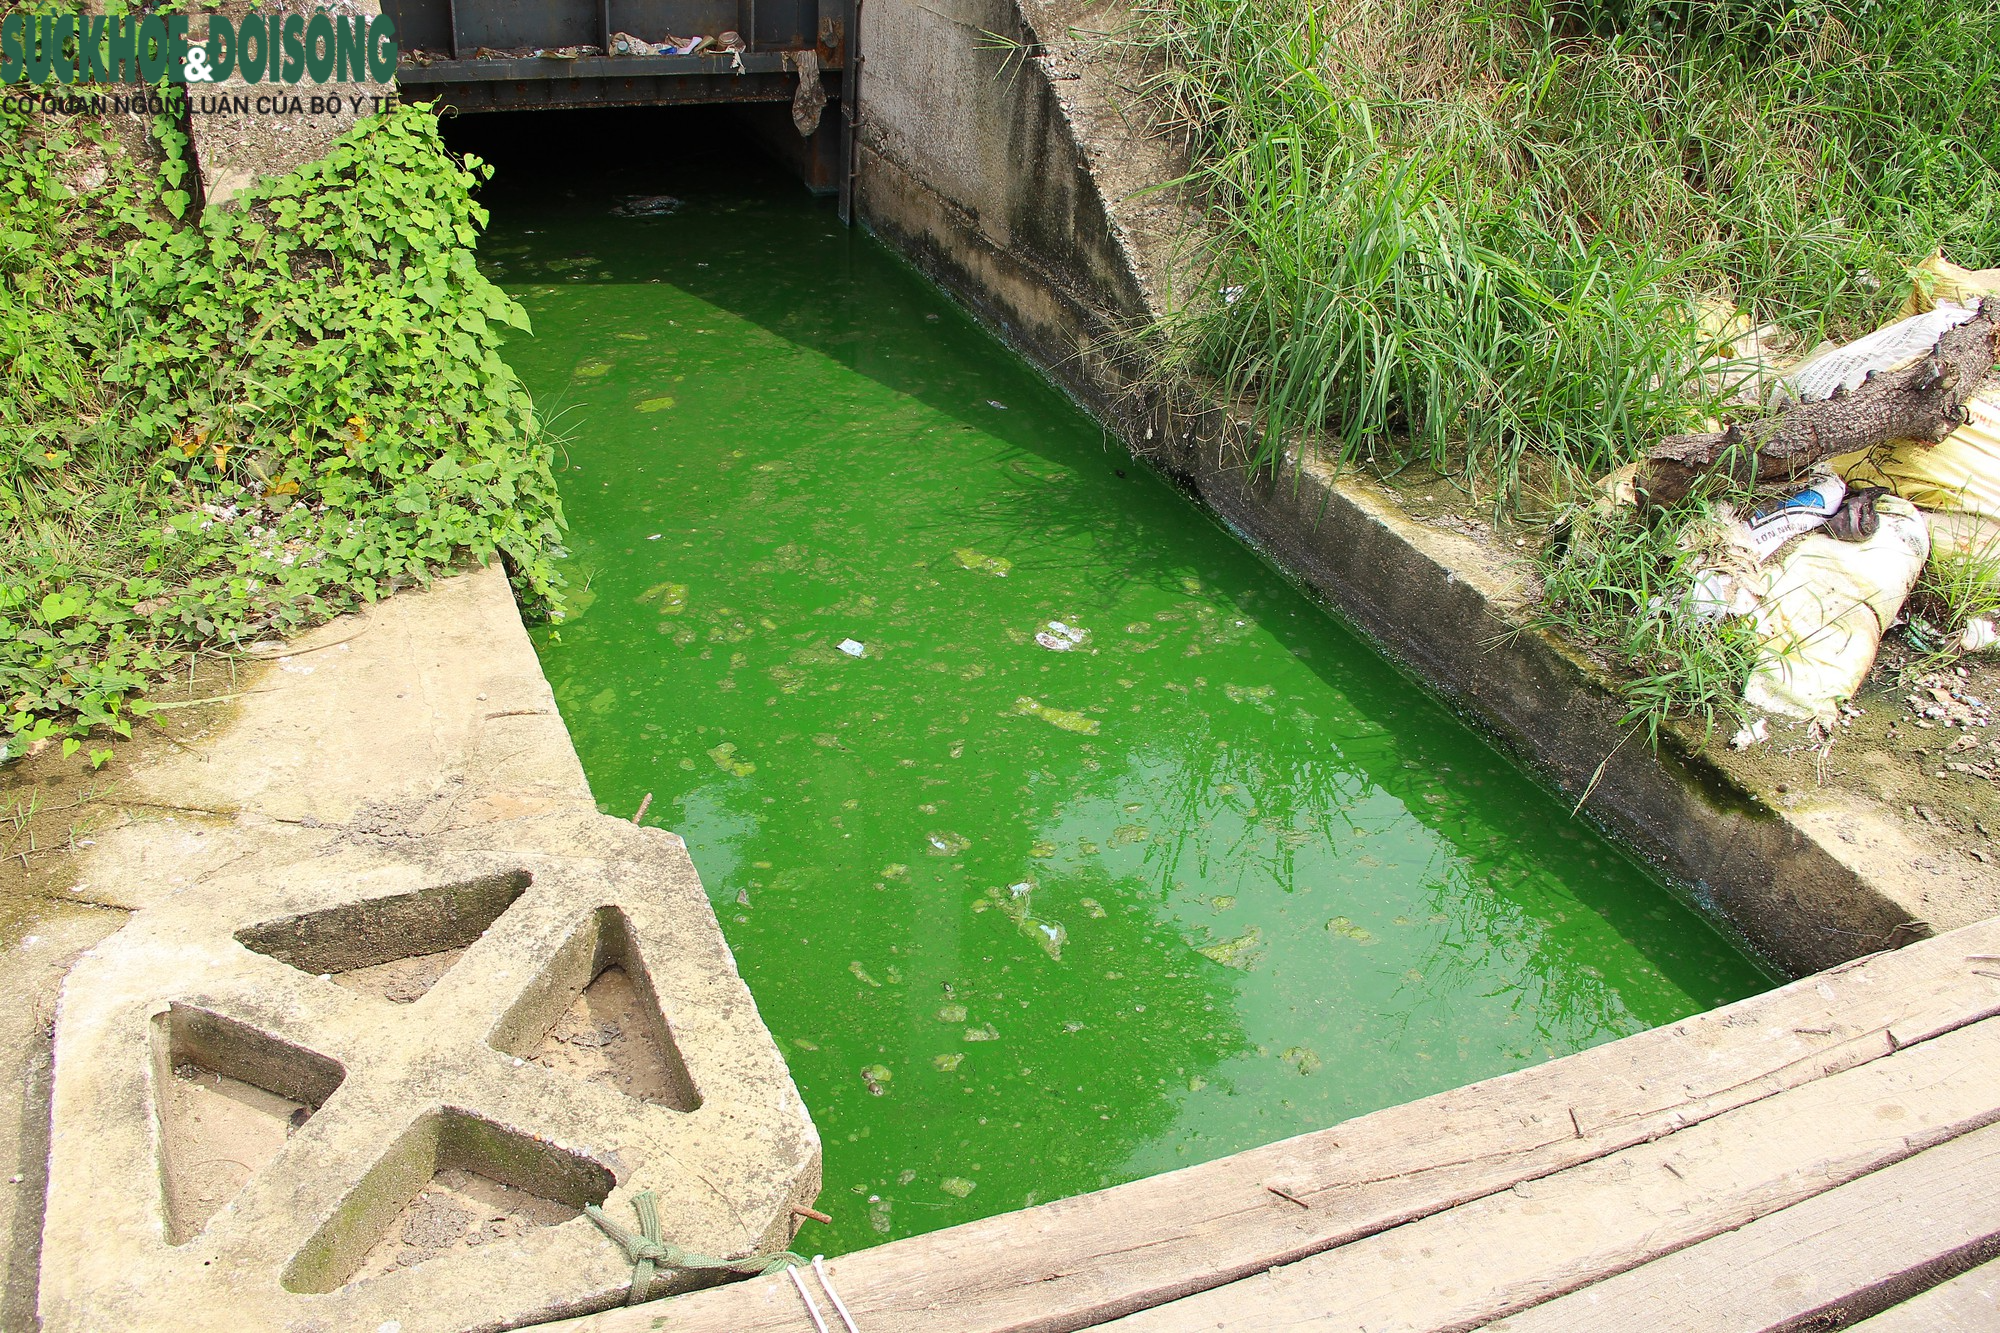 Hồ nước tại trung tâm Hà Nội ô nhiễm, mặt hồ nổi mảng bám, nước bốc mùi - Ảnh 8.